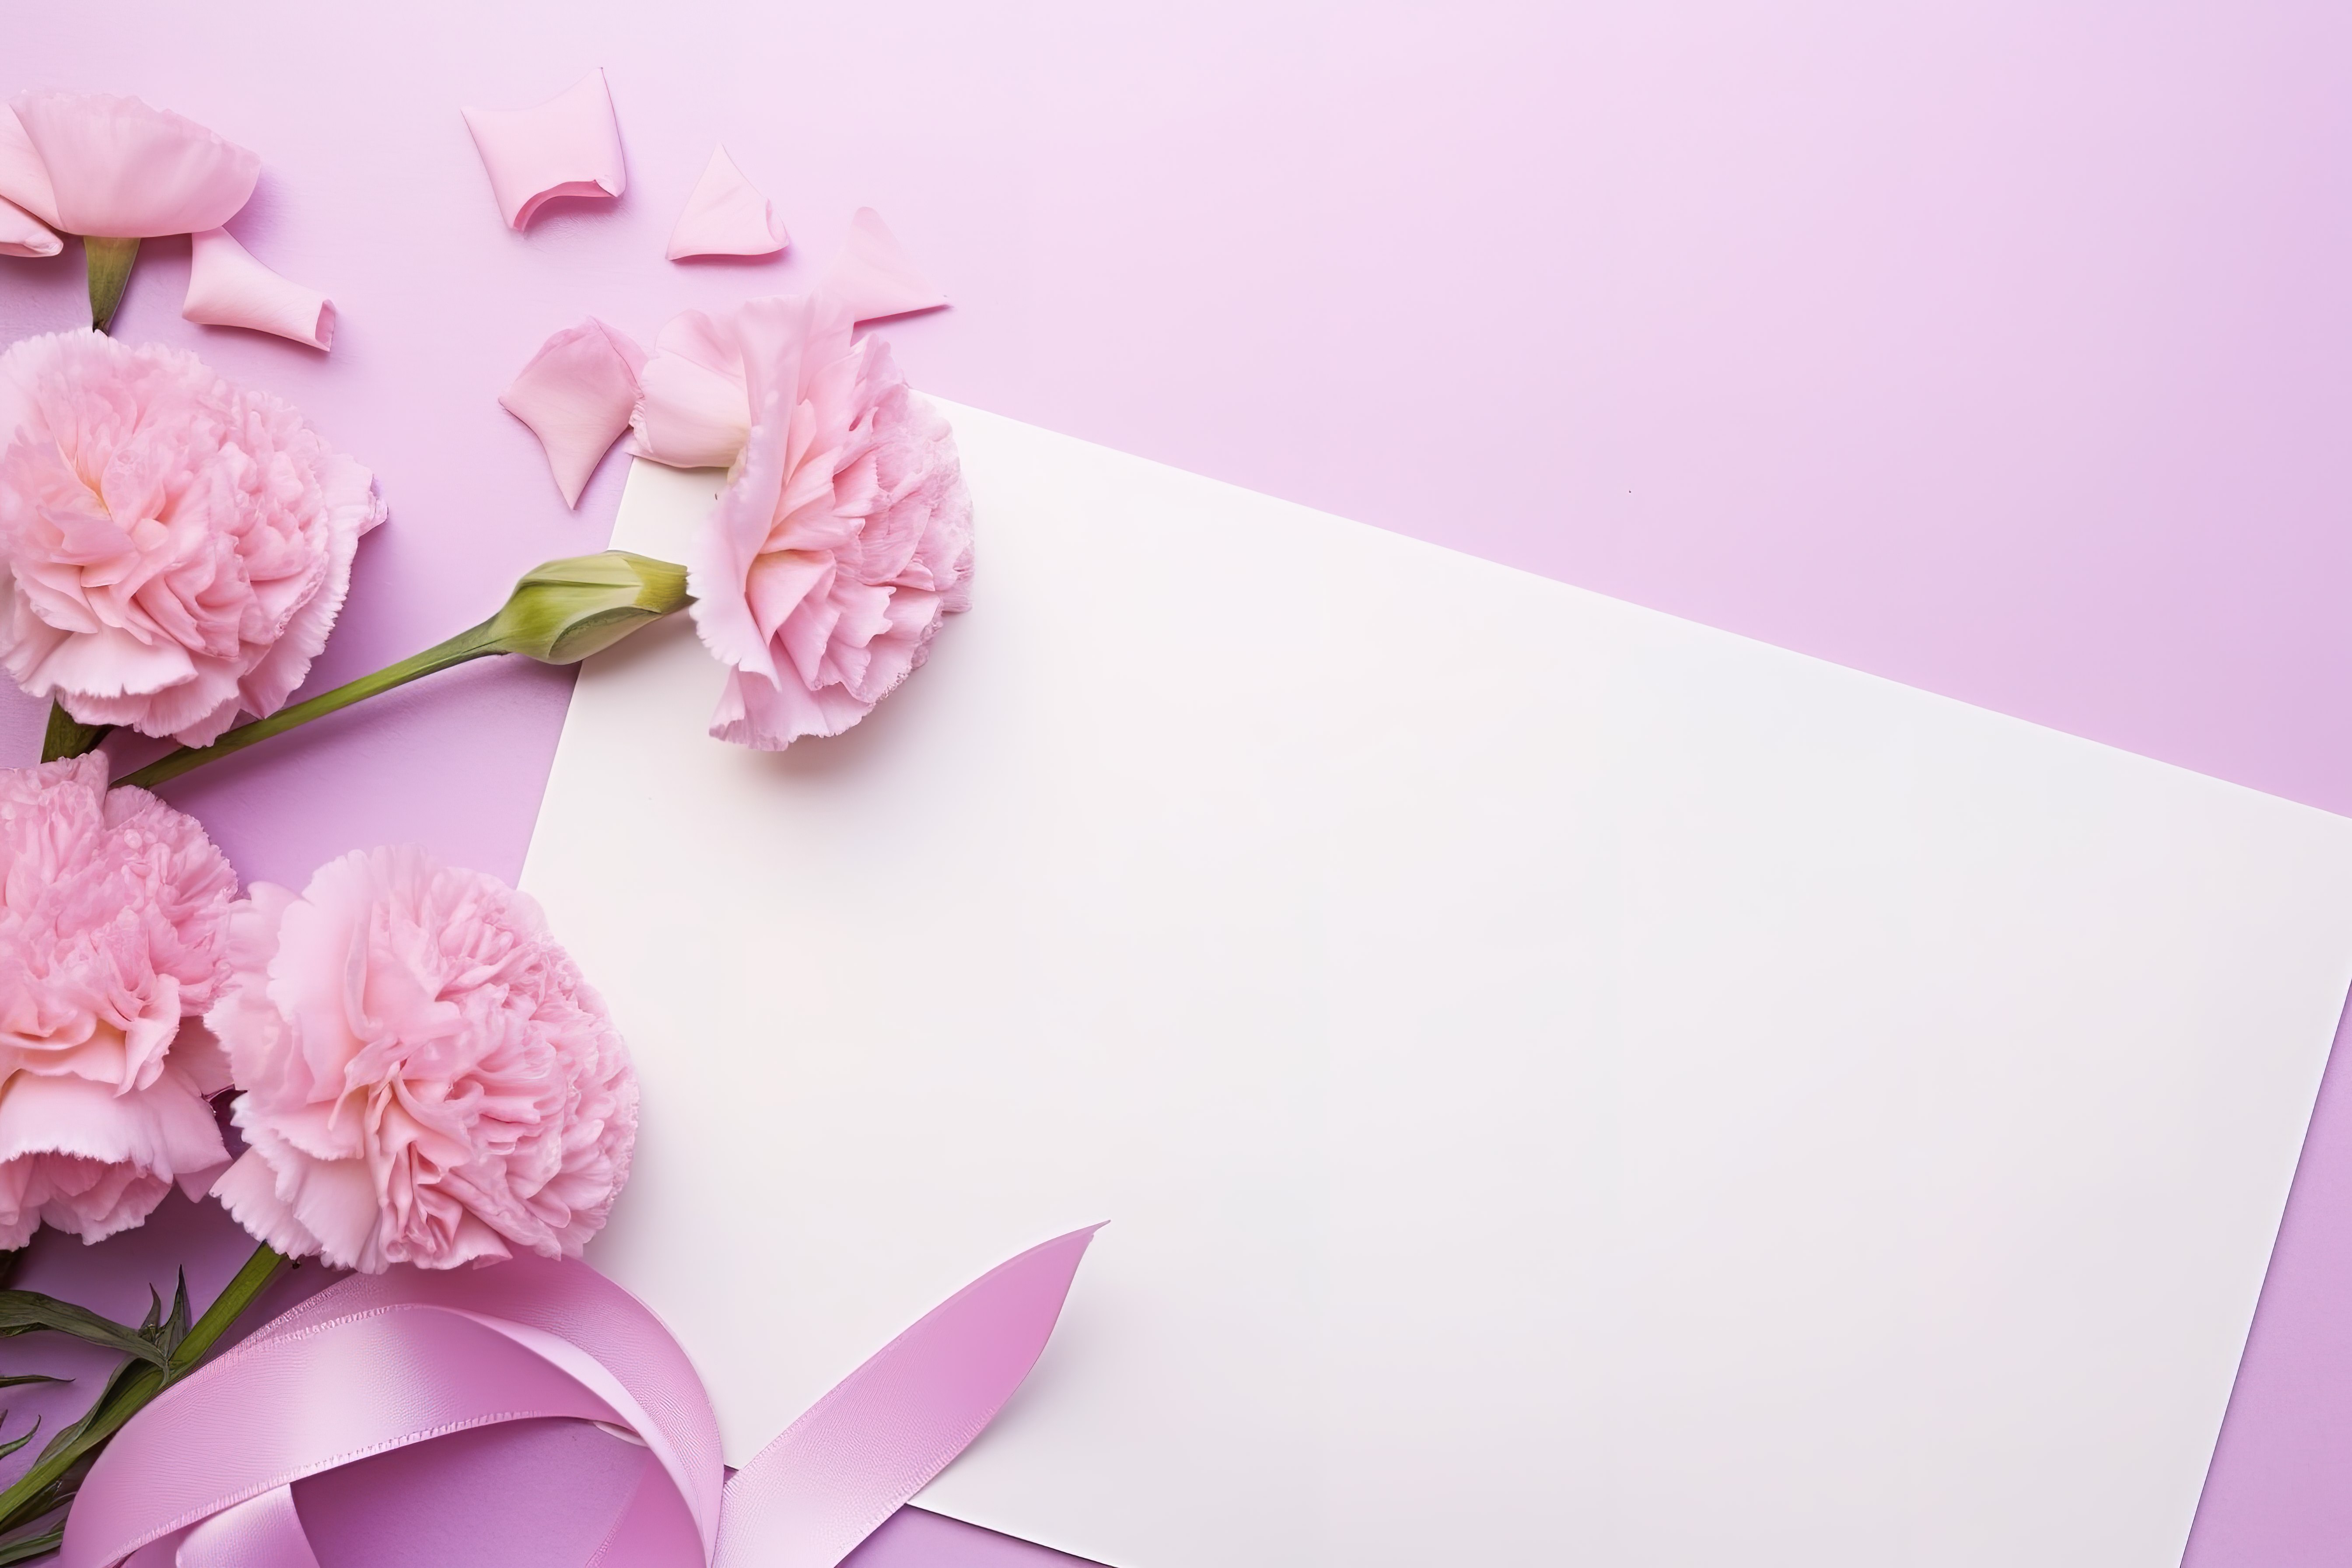 粉色康乃馨和玫瑰围绕着漂亮的白色空白卡片和丝带图片